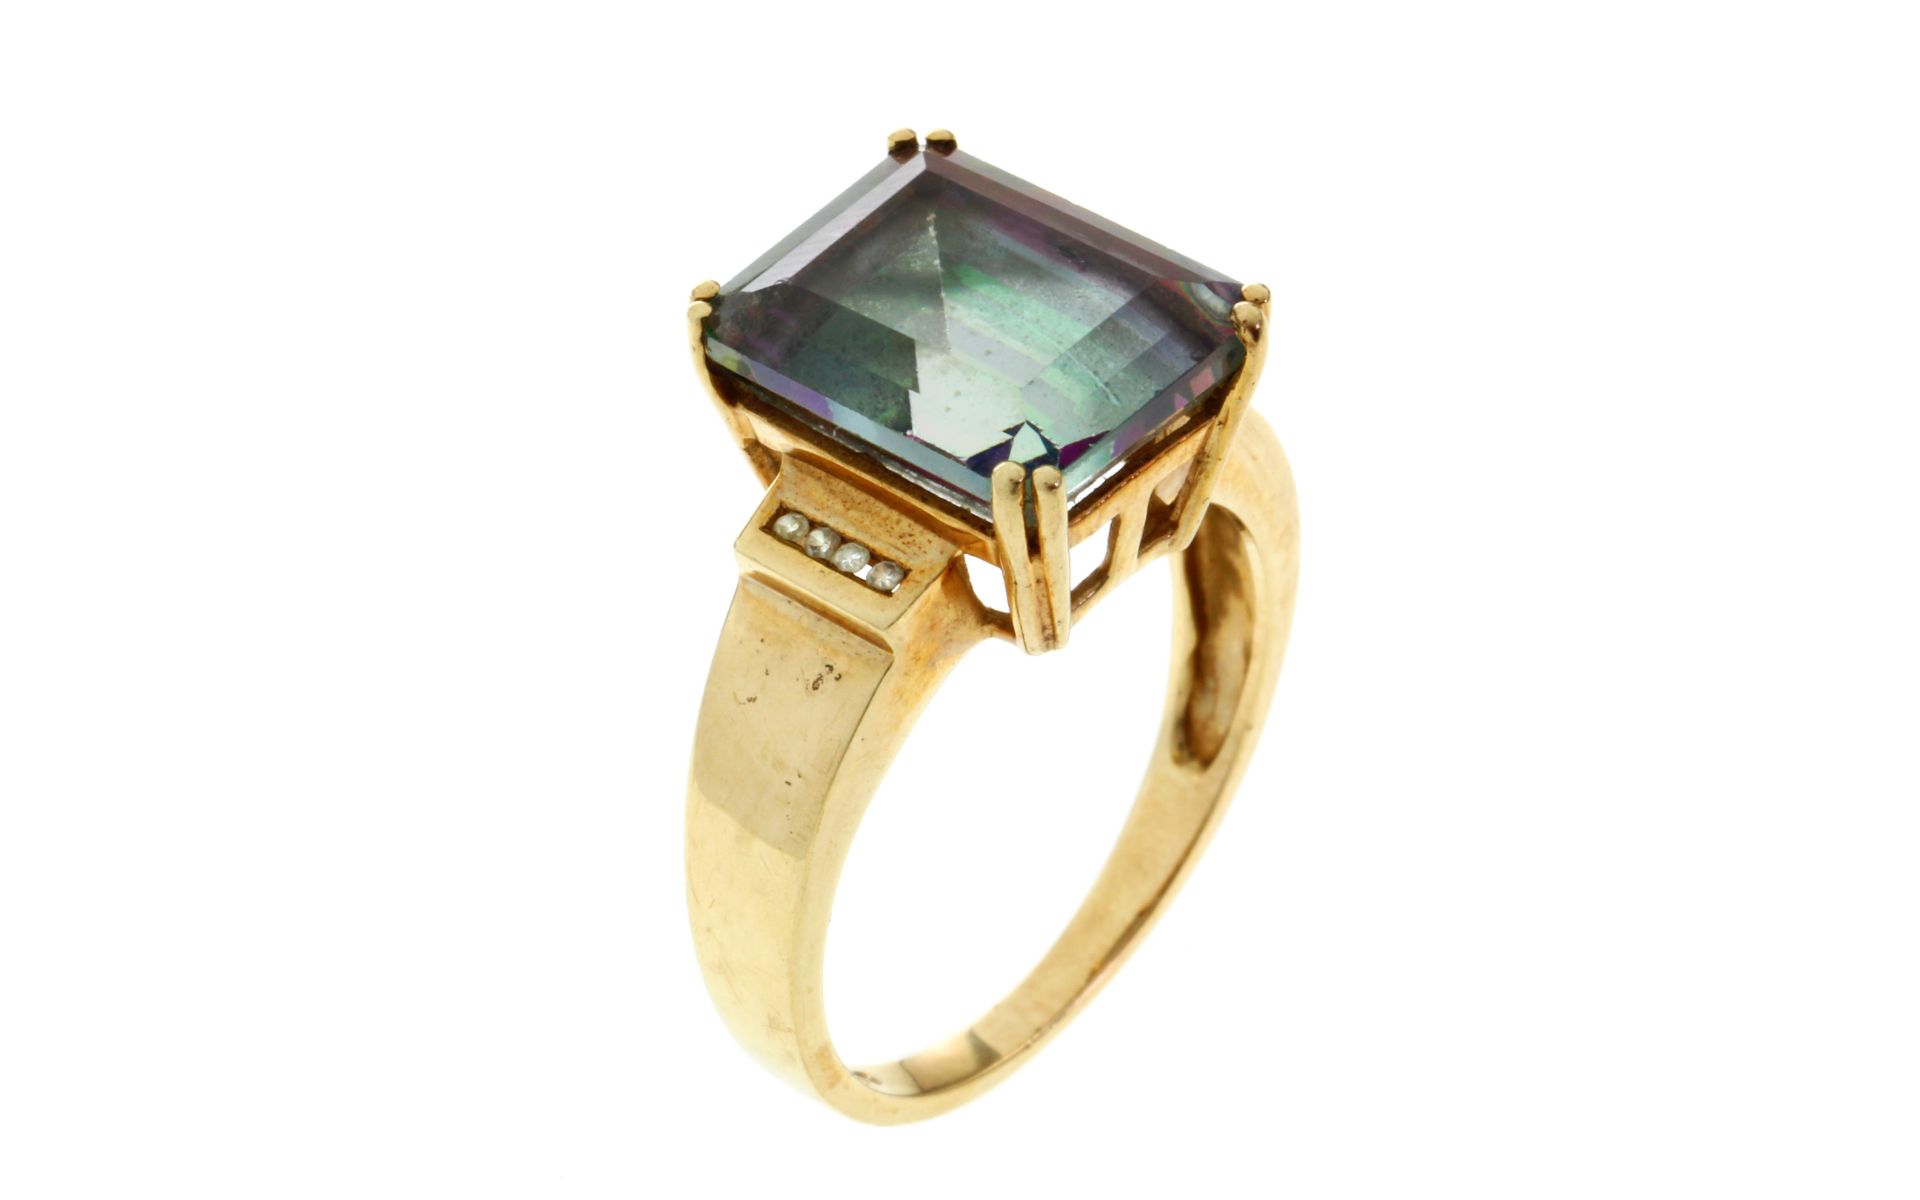 Ring 4,57g 375/- Gelbgold mit 8 Diamanten zus. ca. 0,08 ct. und Farbstein, Ringgröße ca. 56